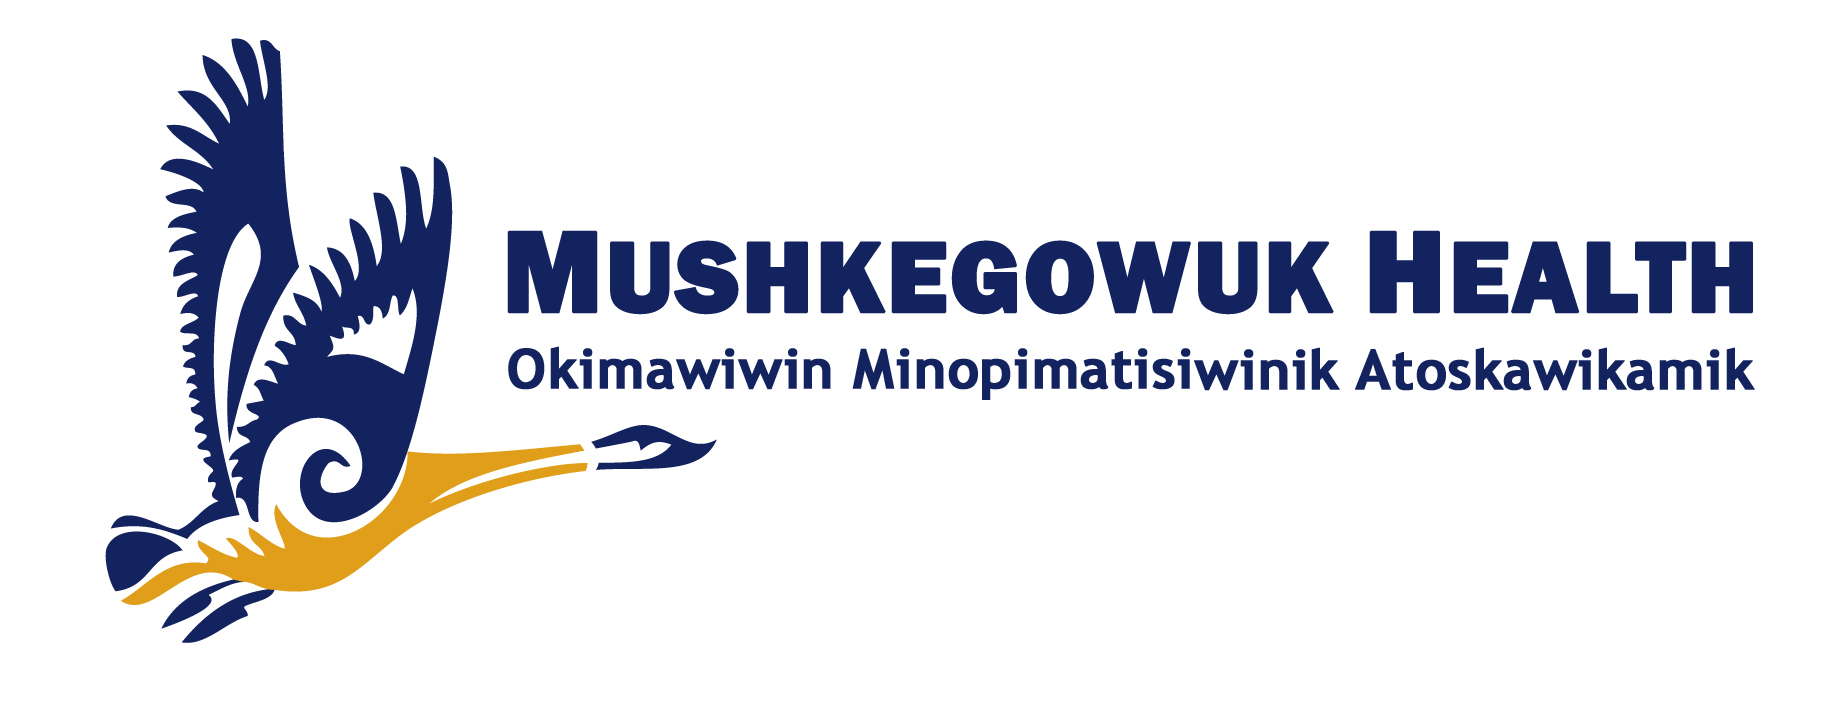 Mushkegowuk Council - Health Department